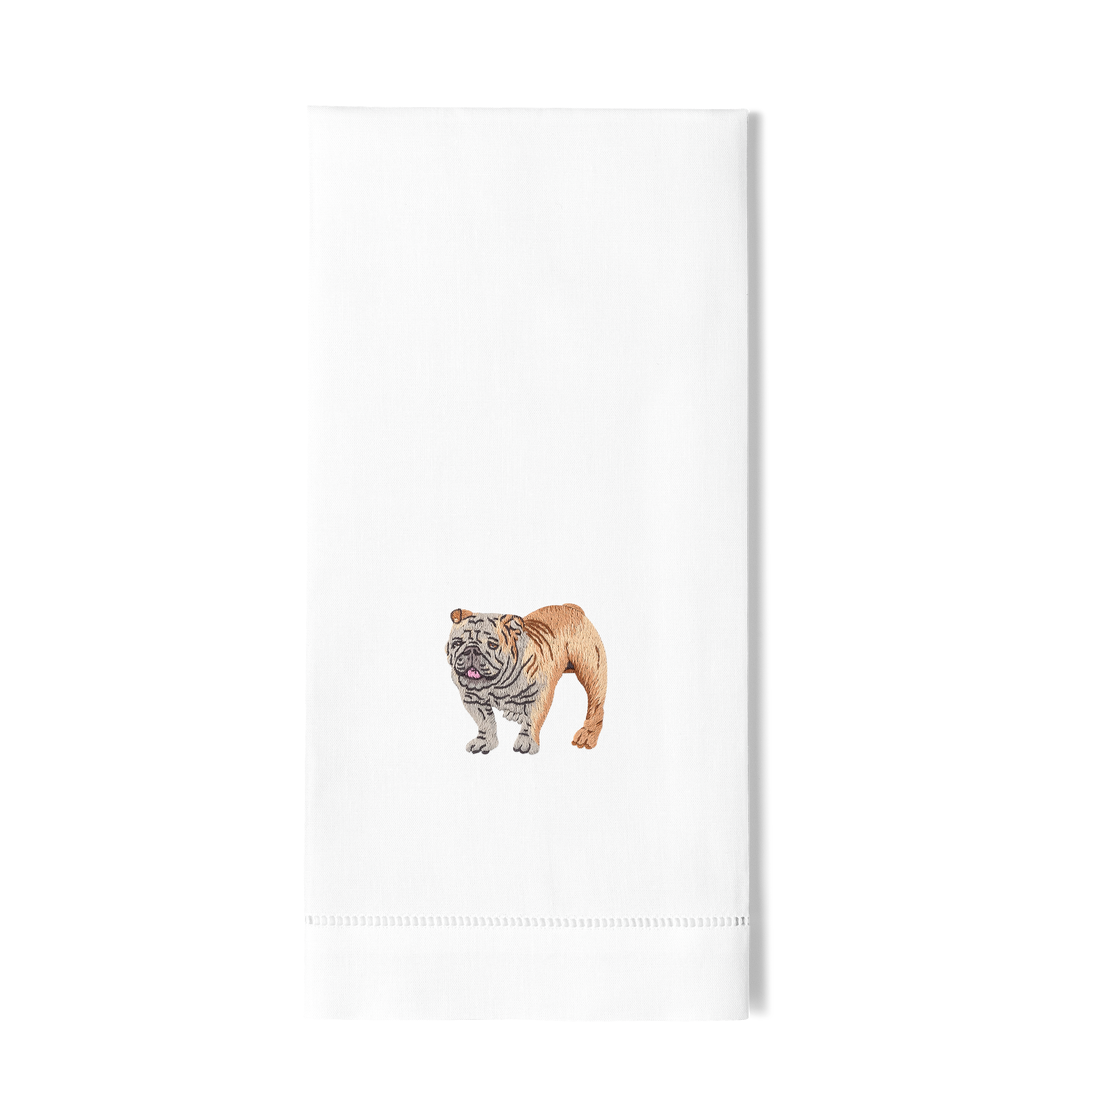 Bulldog Guest Towel